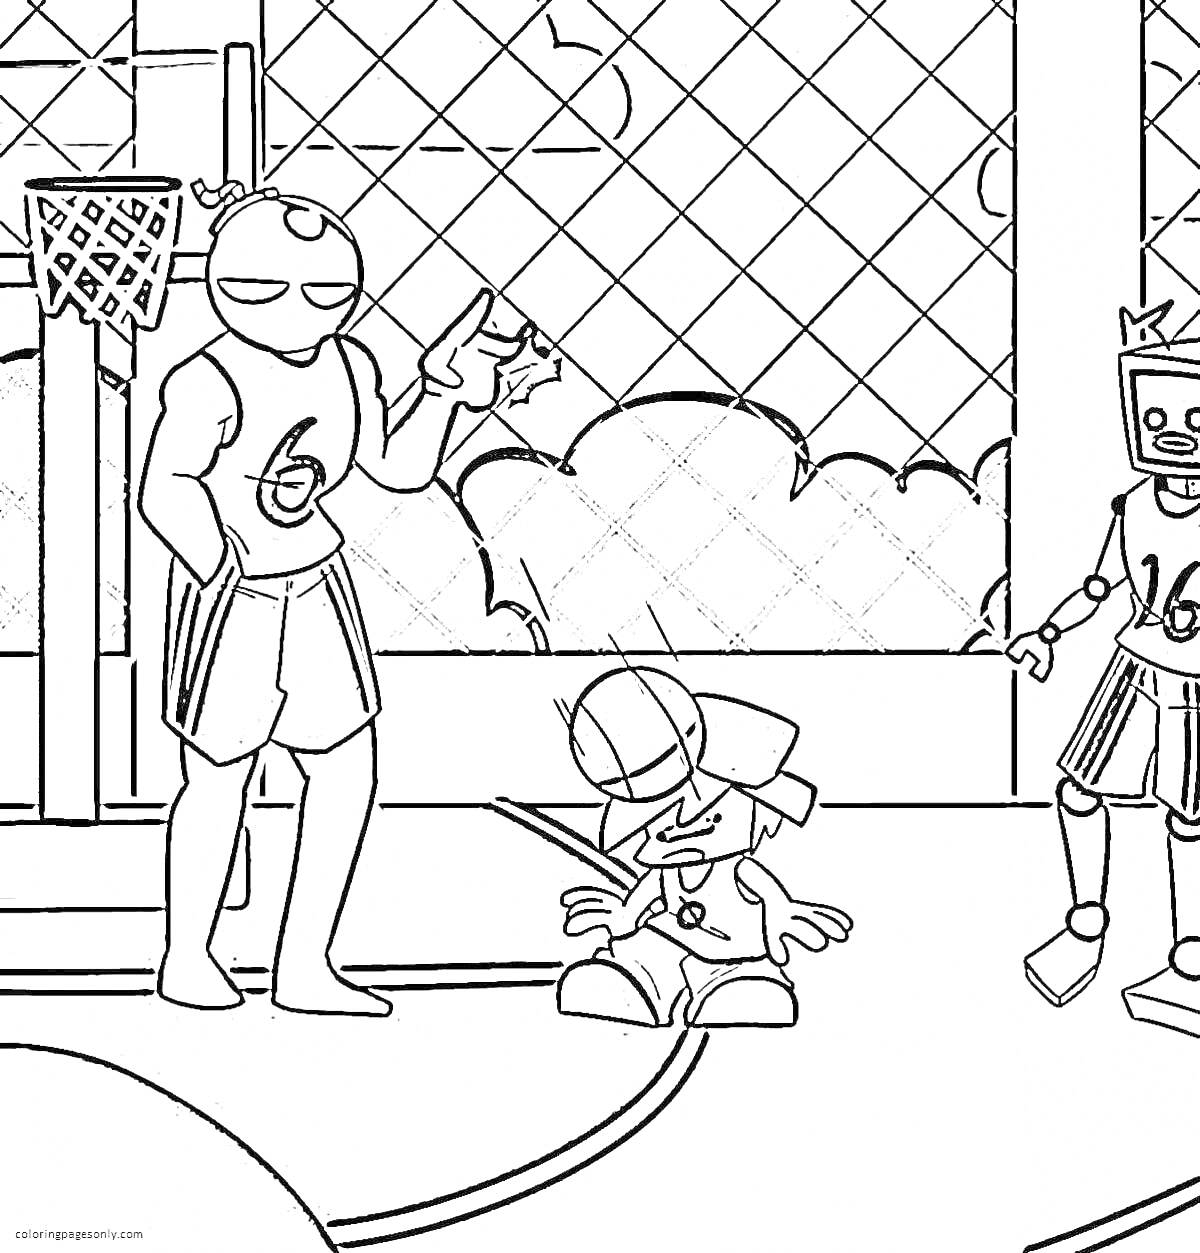 Герои на баскетбольной площадке: робот, мальчик, баскетболист